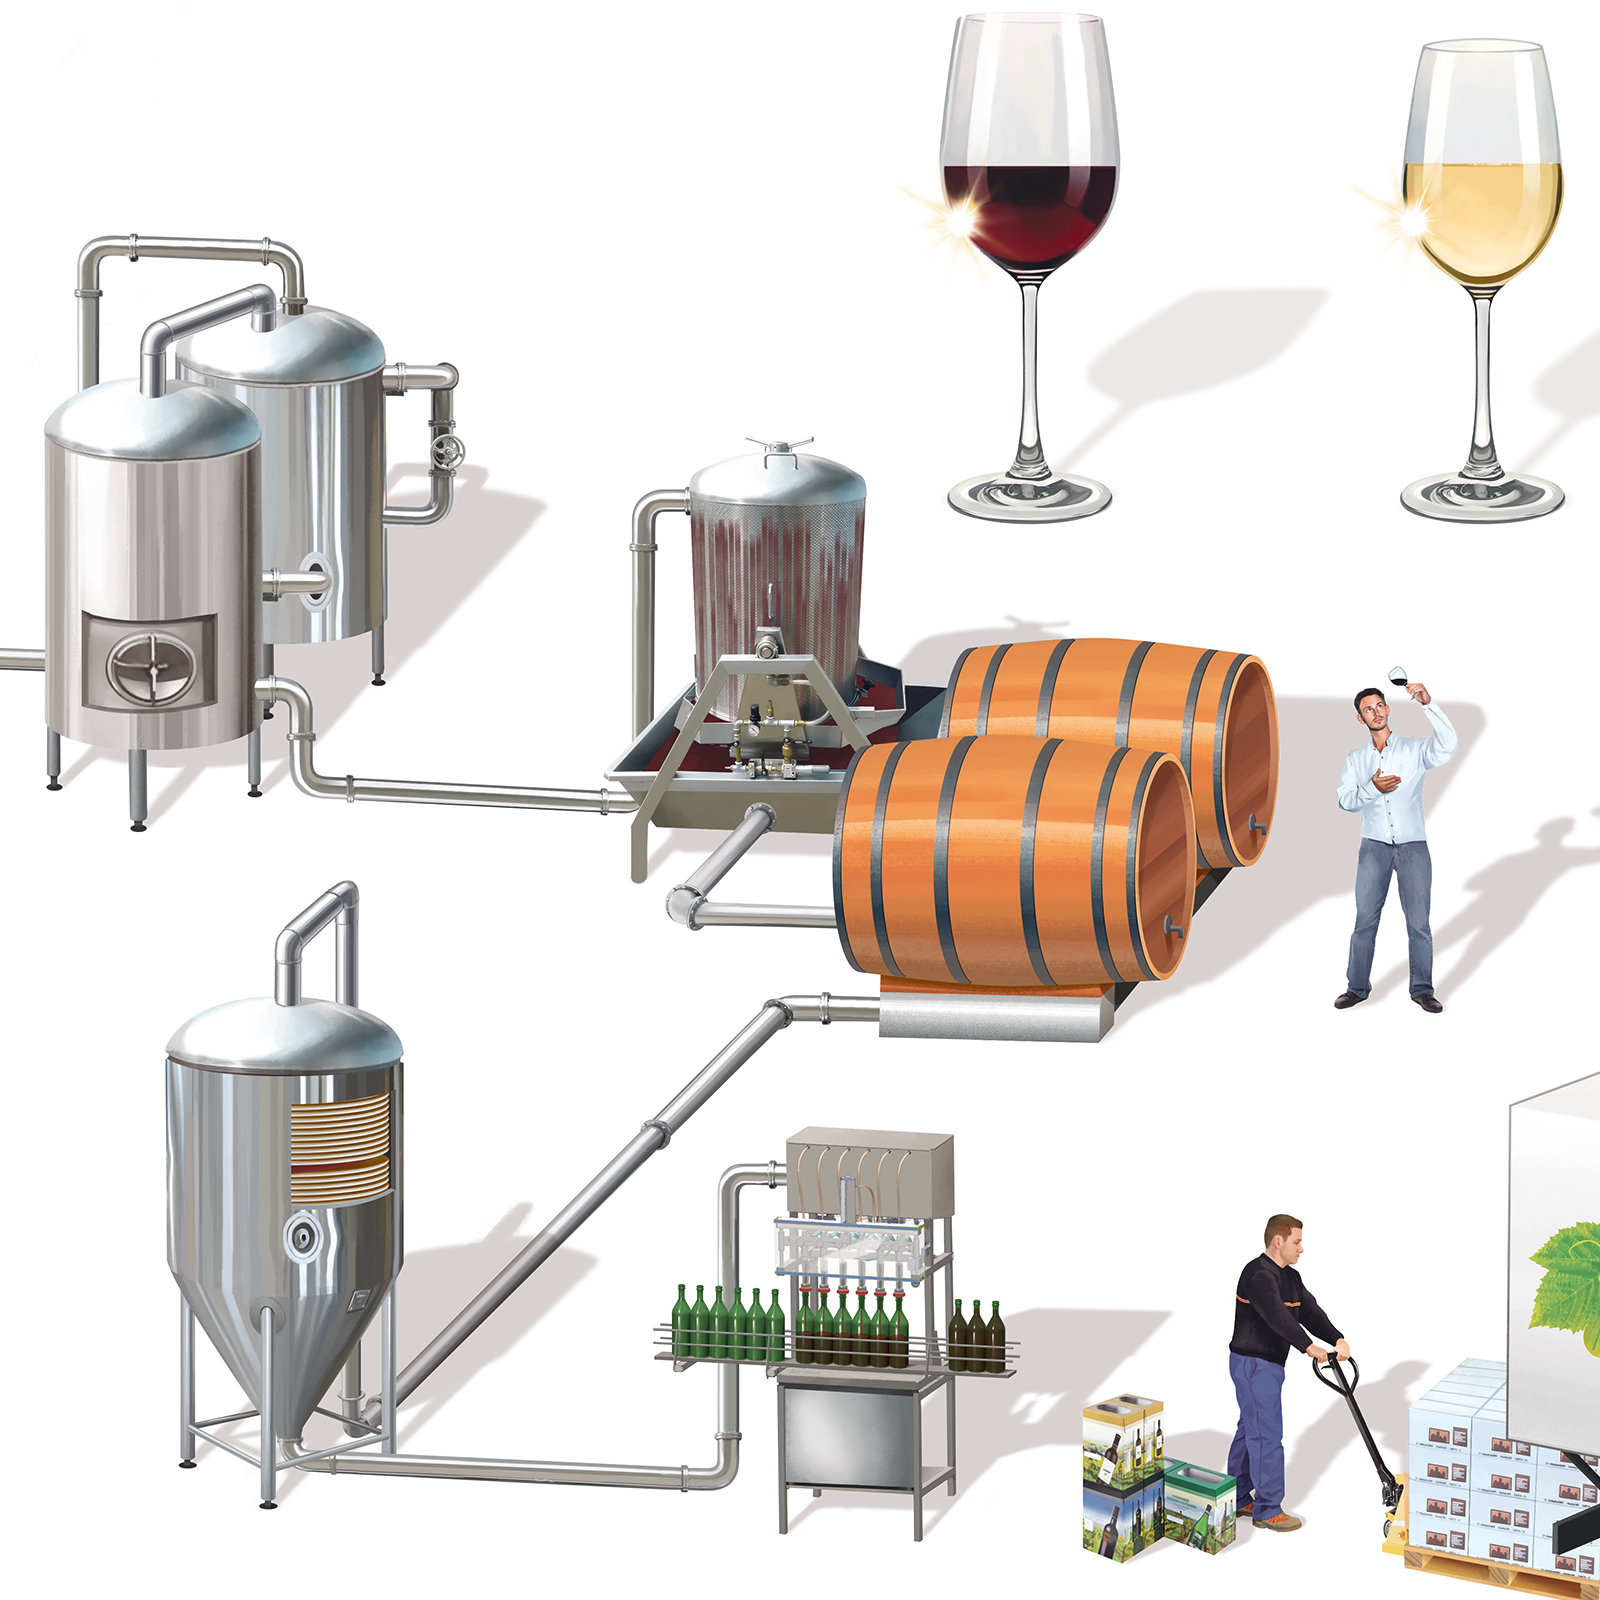 Herstellung Wein